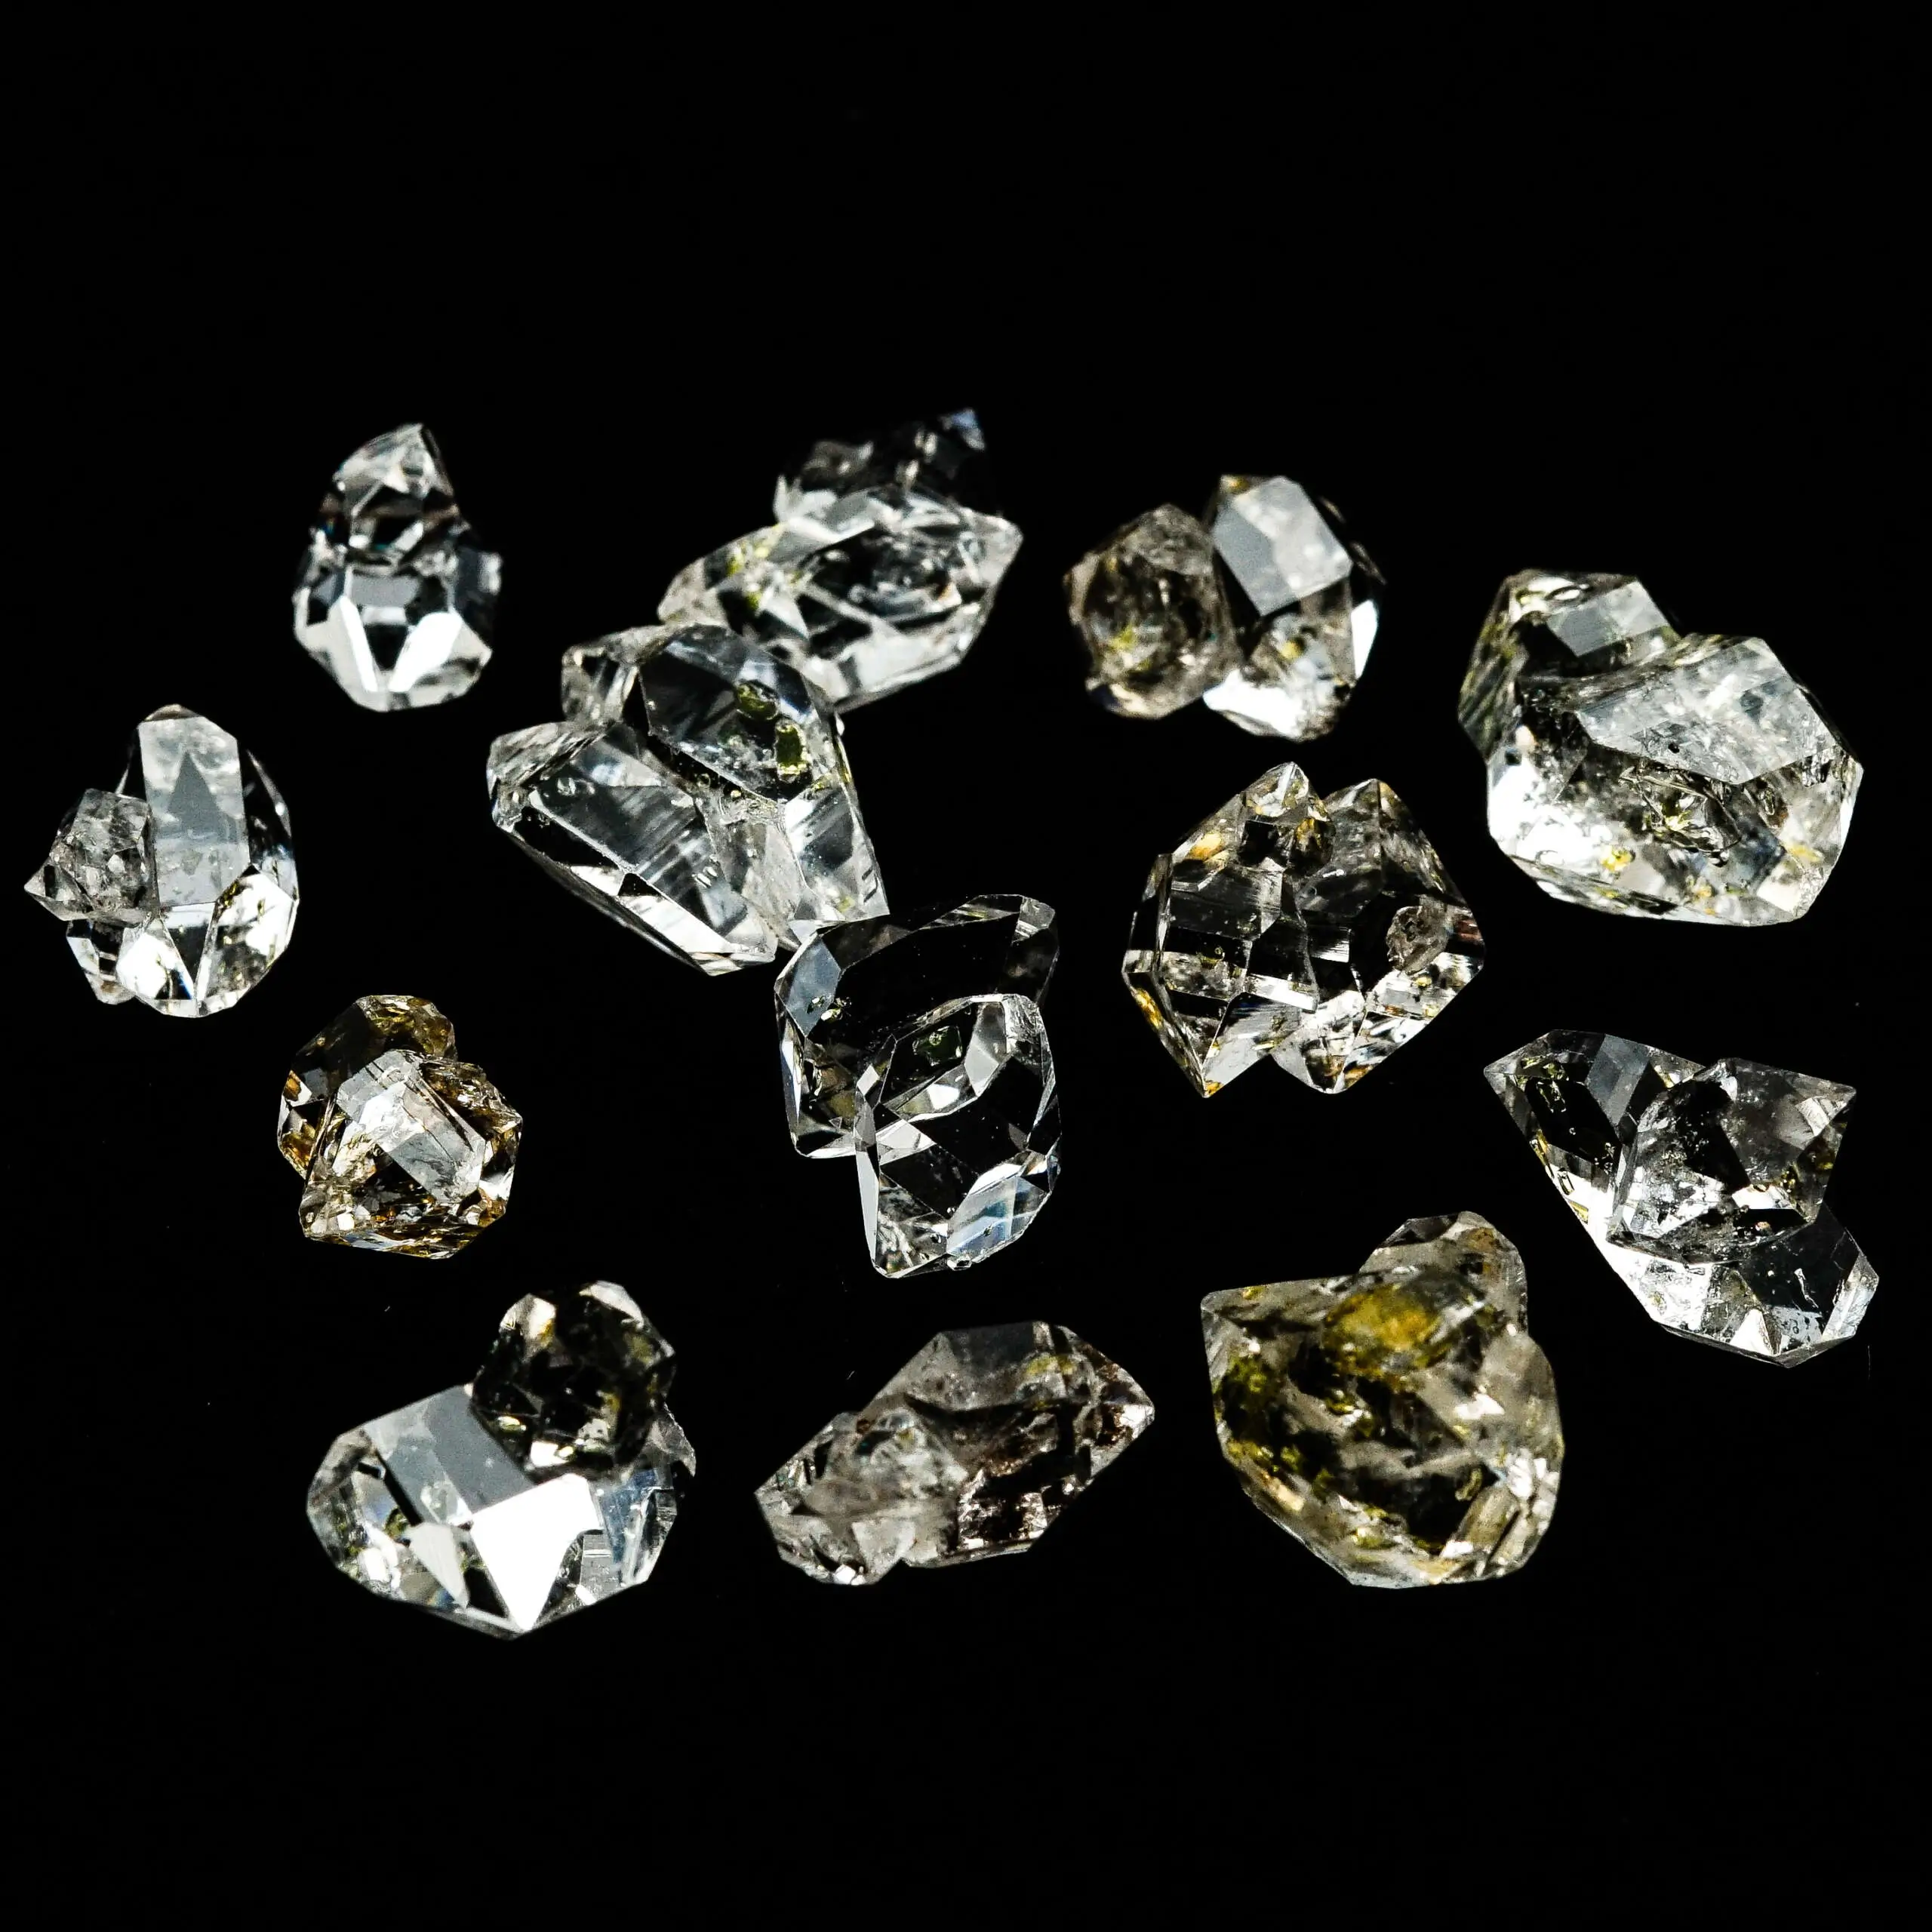 Dove vendere diamanti usati: la guida completa